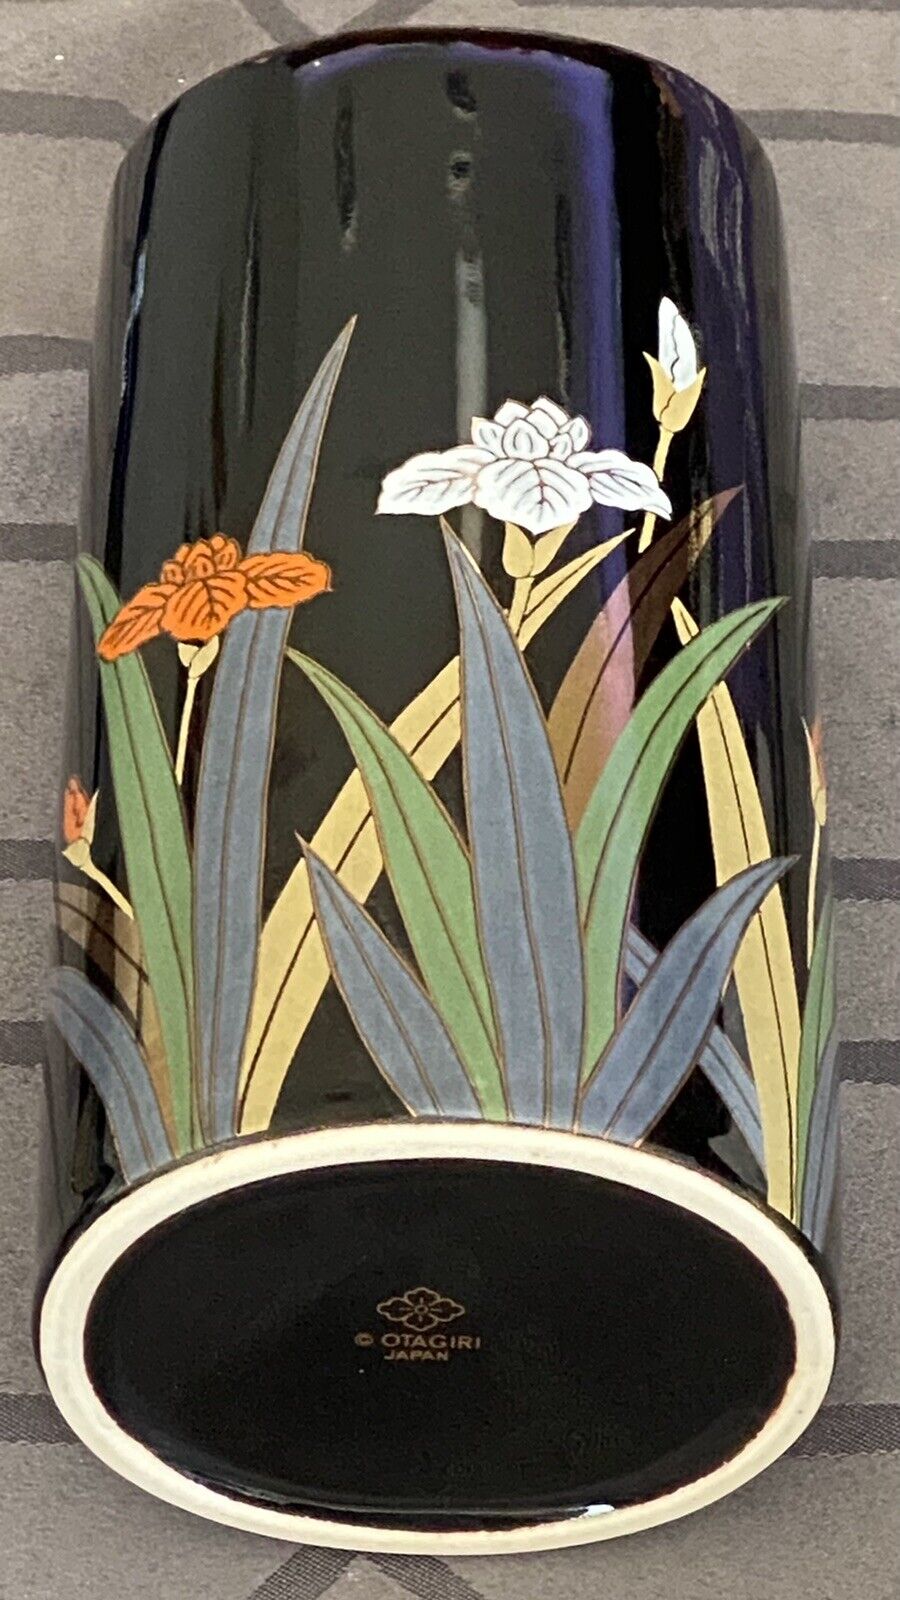 Otagiri Black Gold Trimmed Flower Vase Made in Japan 8.5” Tall